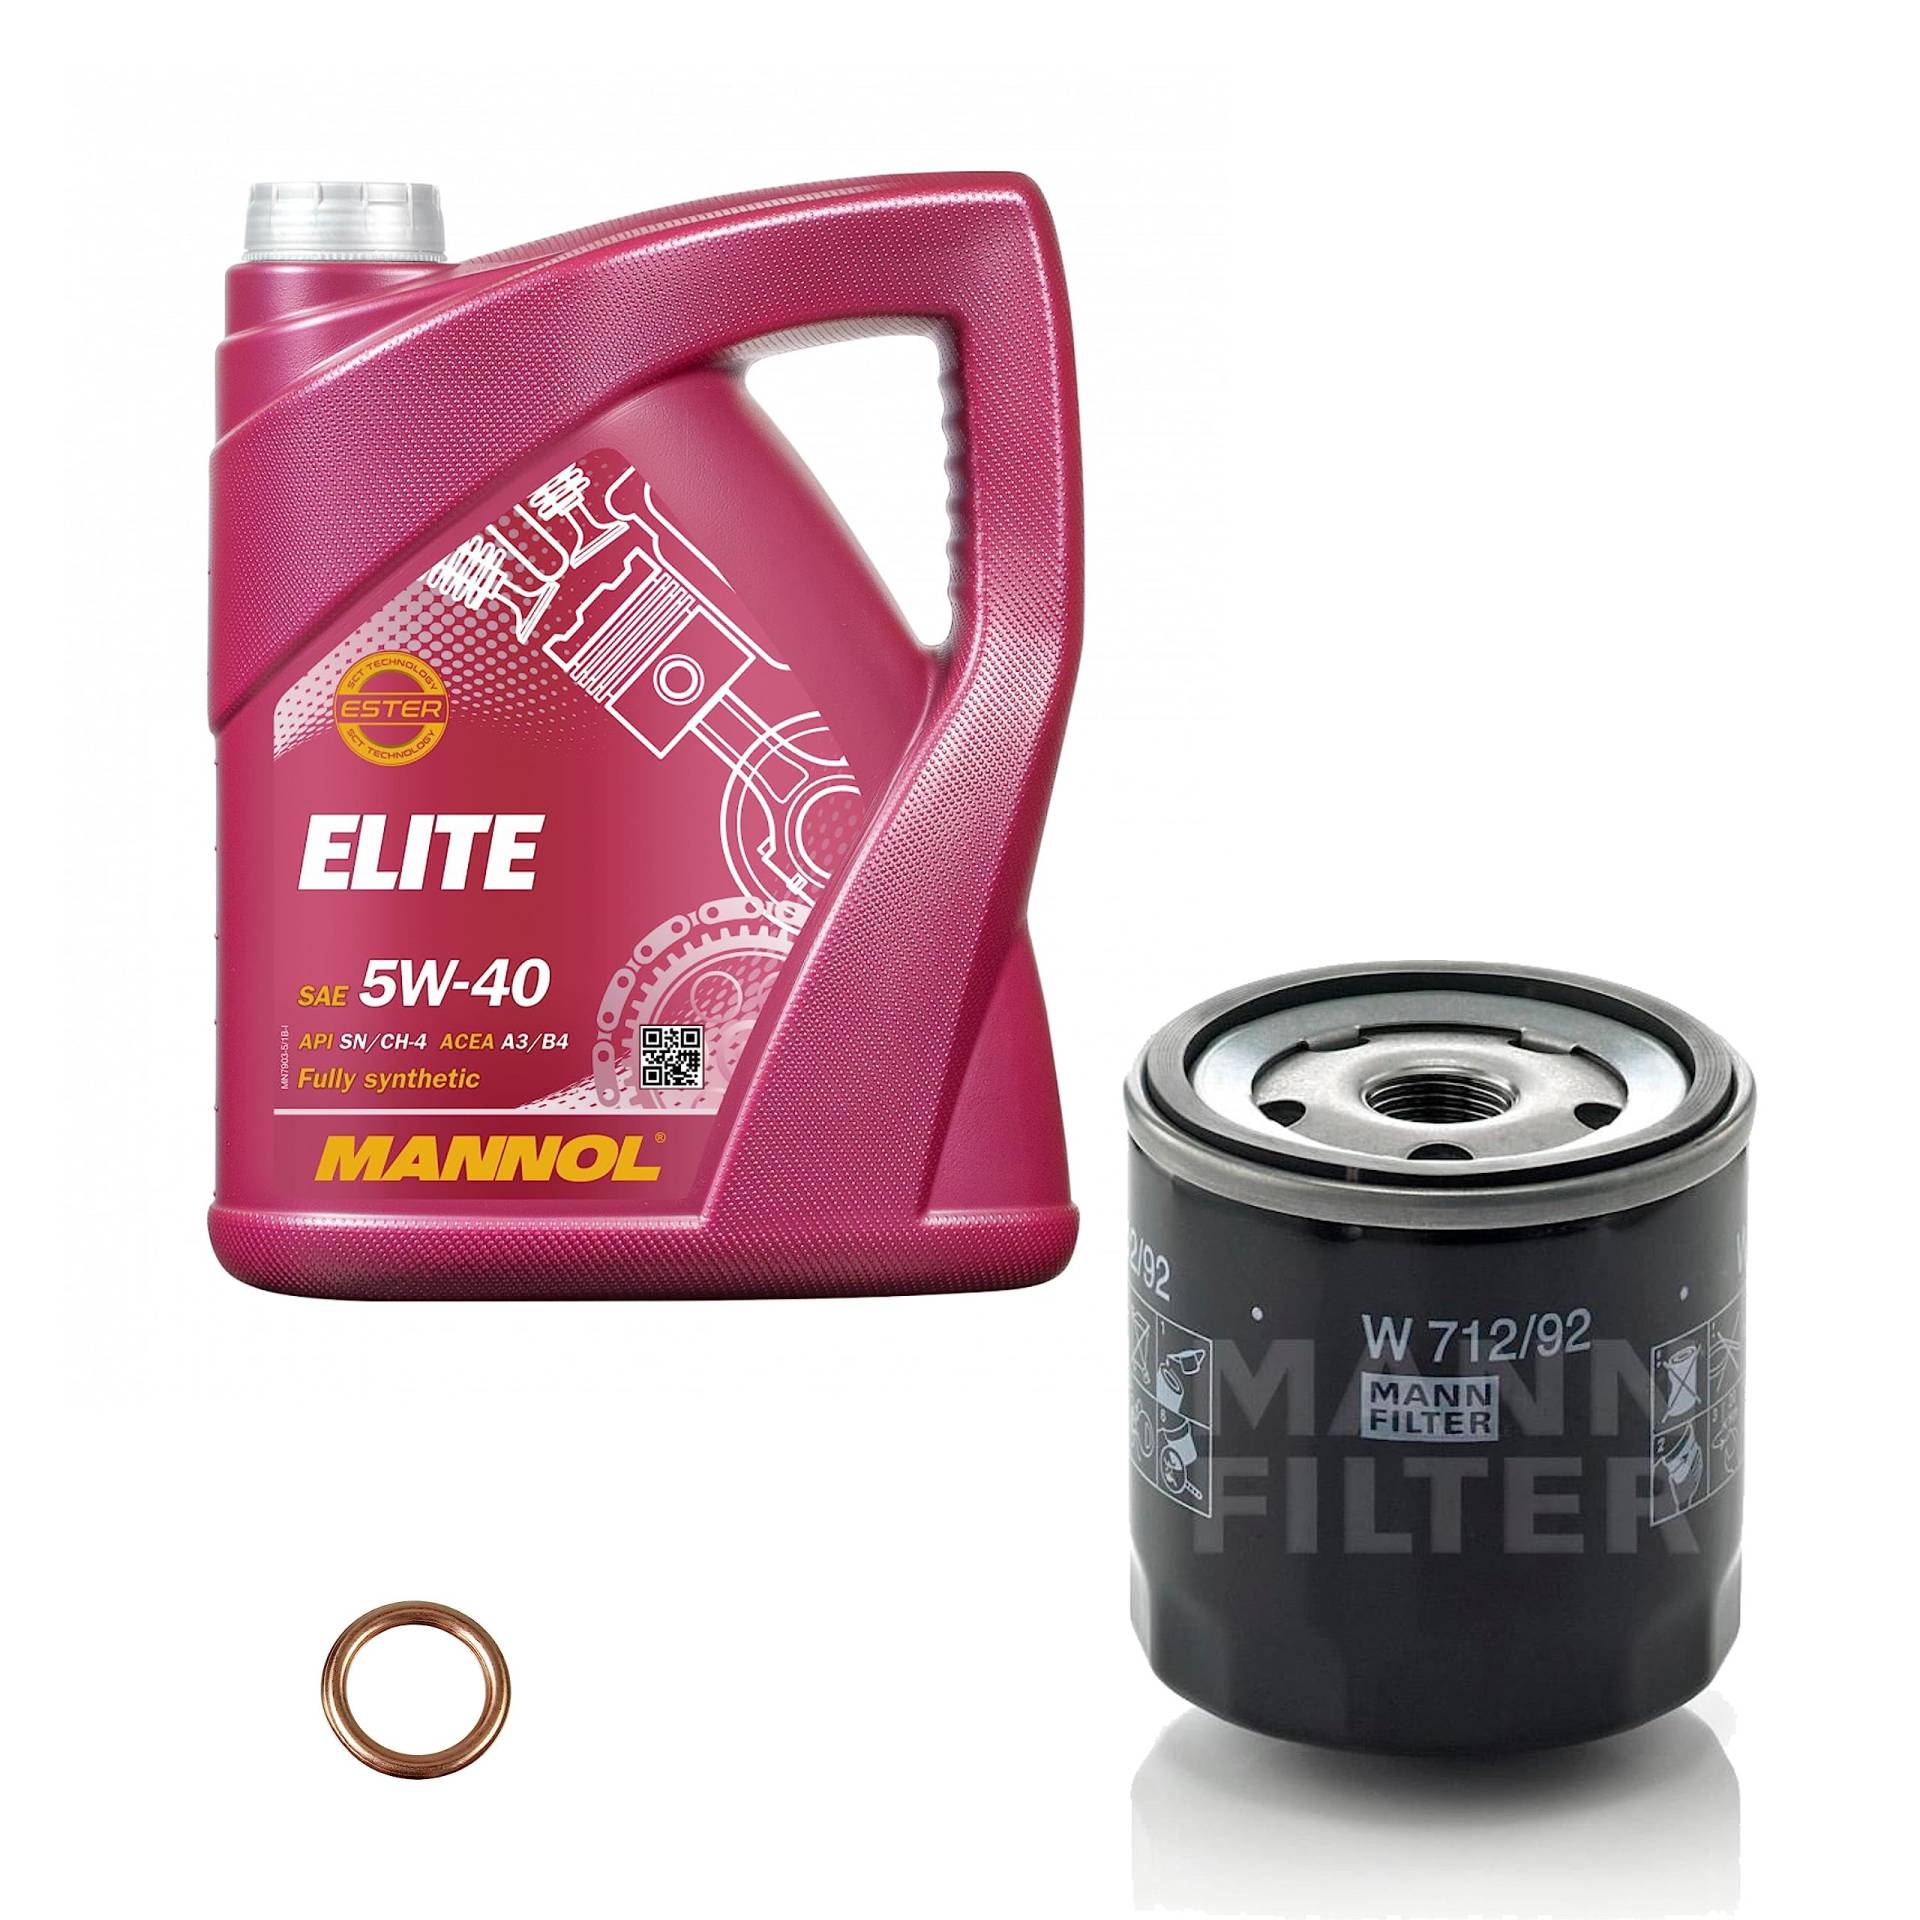 EISENFELS Filter Set Inspektionspaket erstellt mit 5 L Motoröl MANNOL Elite 5W-40, MANN-FILTER Ölfilter, Dichtring von EISENFELS